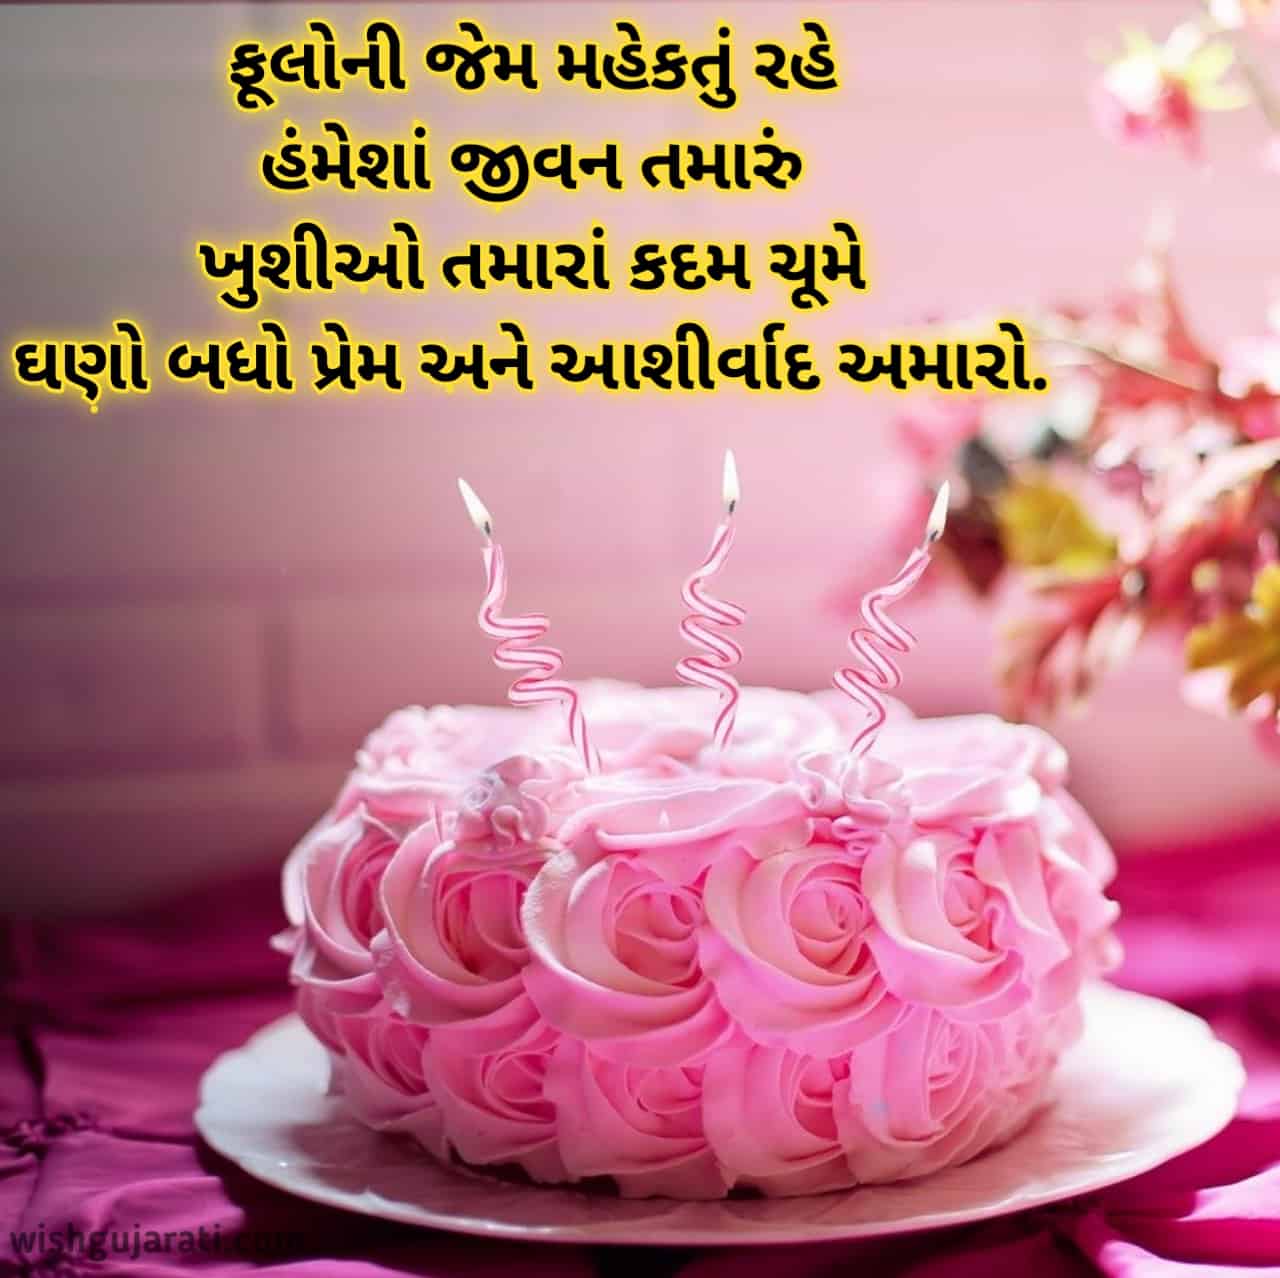 happy birthday wishes in gujarati